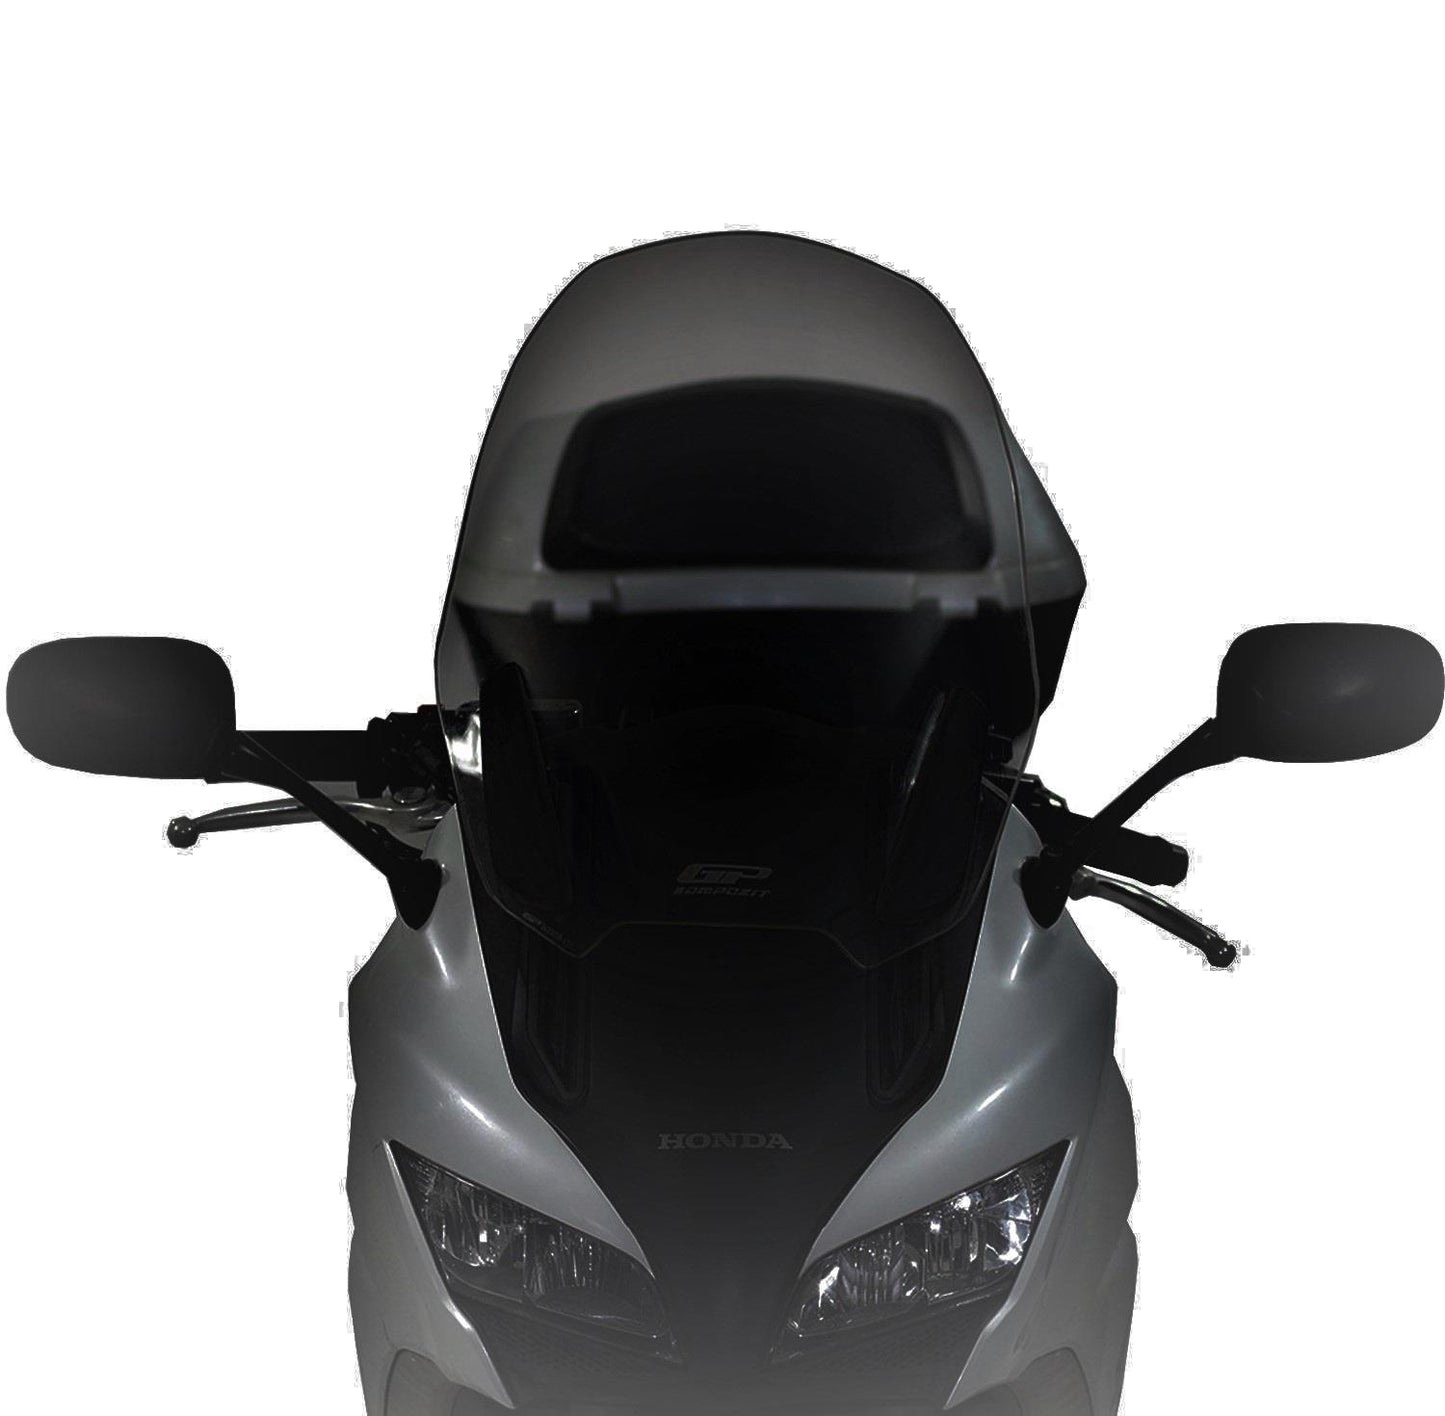 Honda CBF 1000 windscreen 50 cm dark smoke 10-17